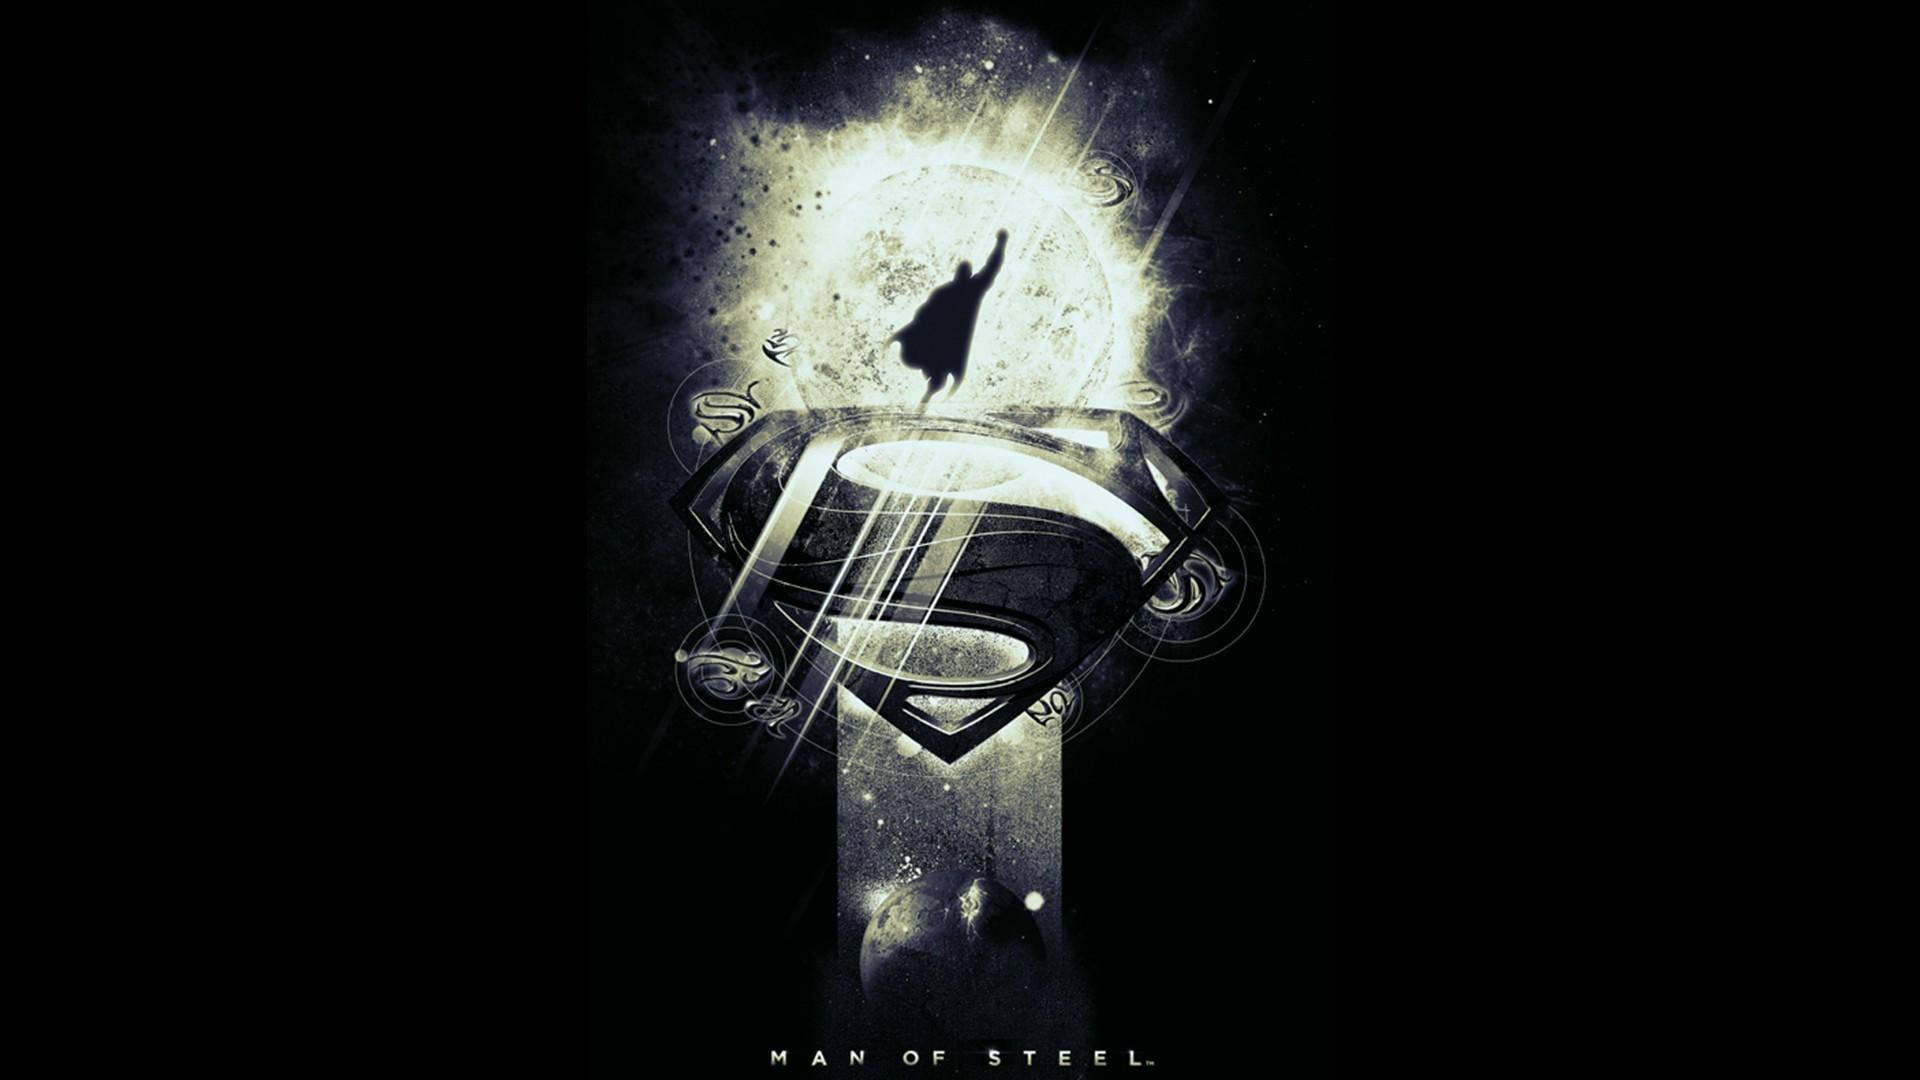 Steel superman black background fan art movies wallpaper | (89443)